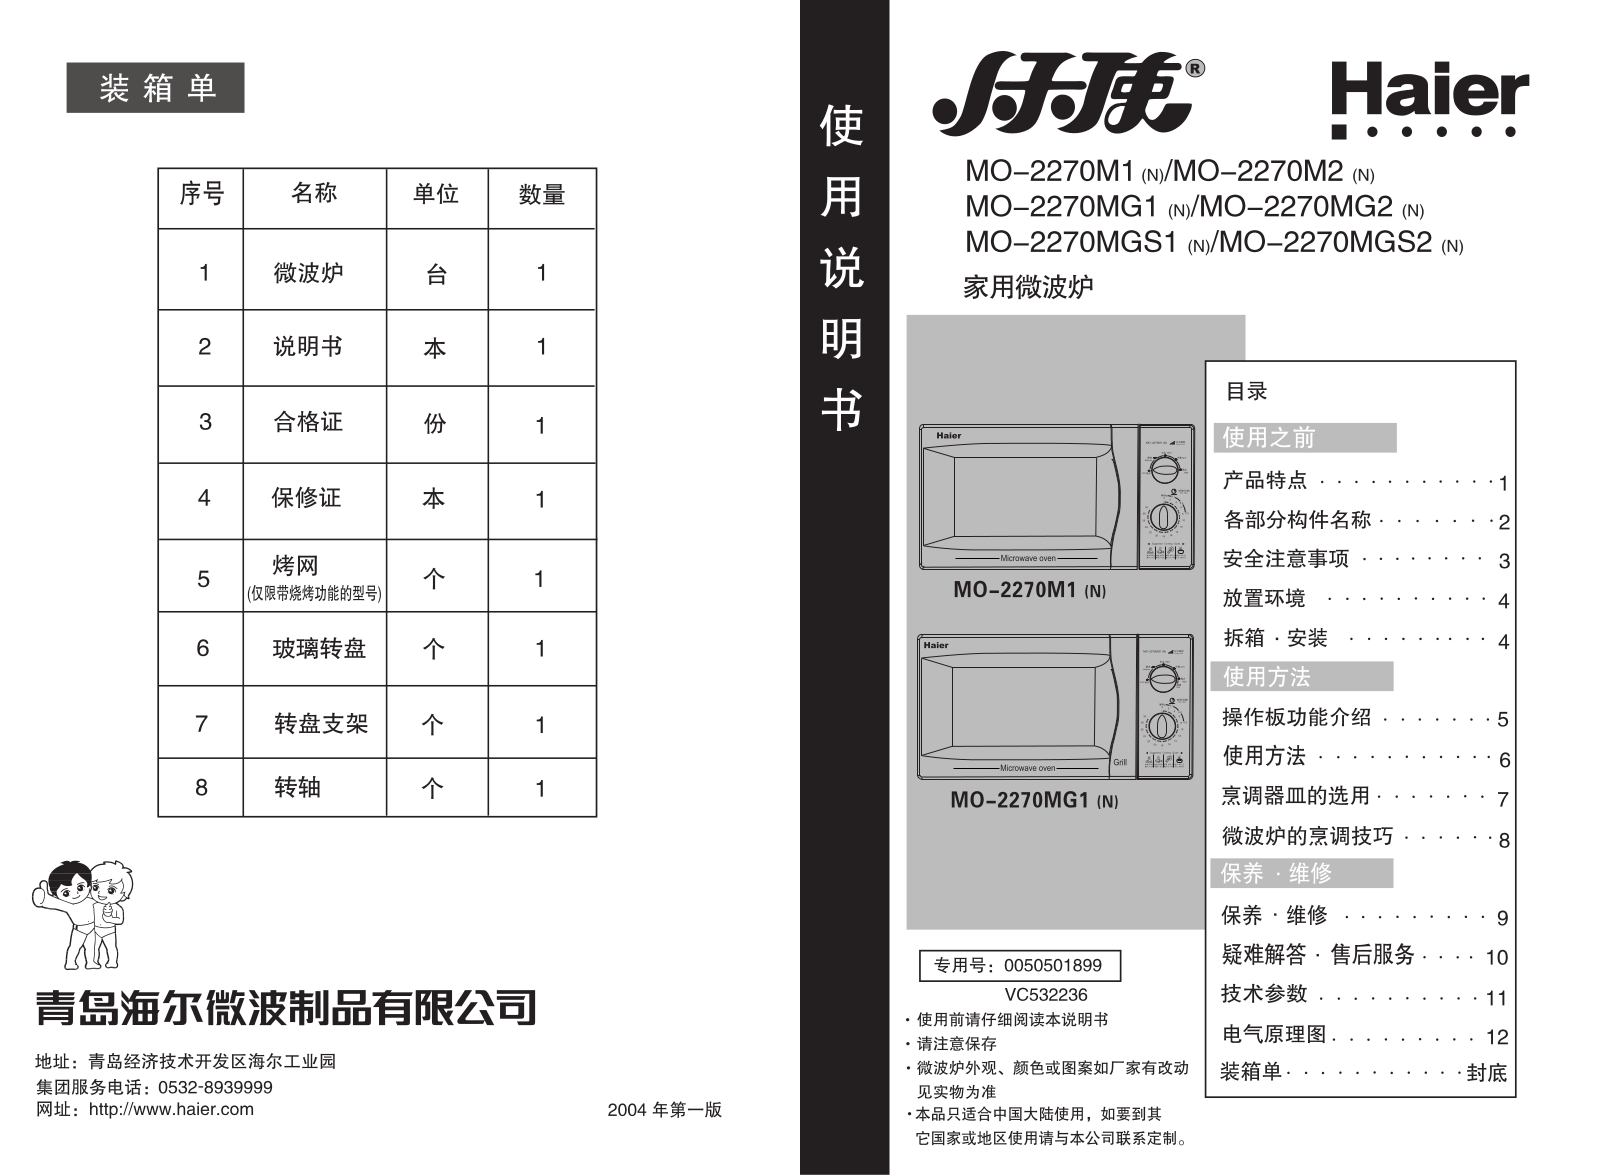 Haier MO-2270M1, MO-2270M3, MO-2270MG1, MM-2270MG2, MM-2270MGS1 User Manual